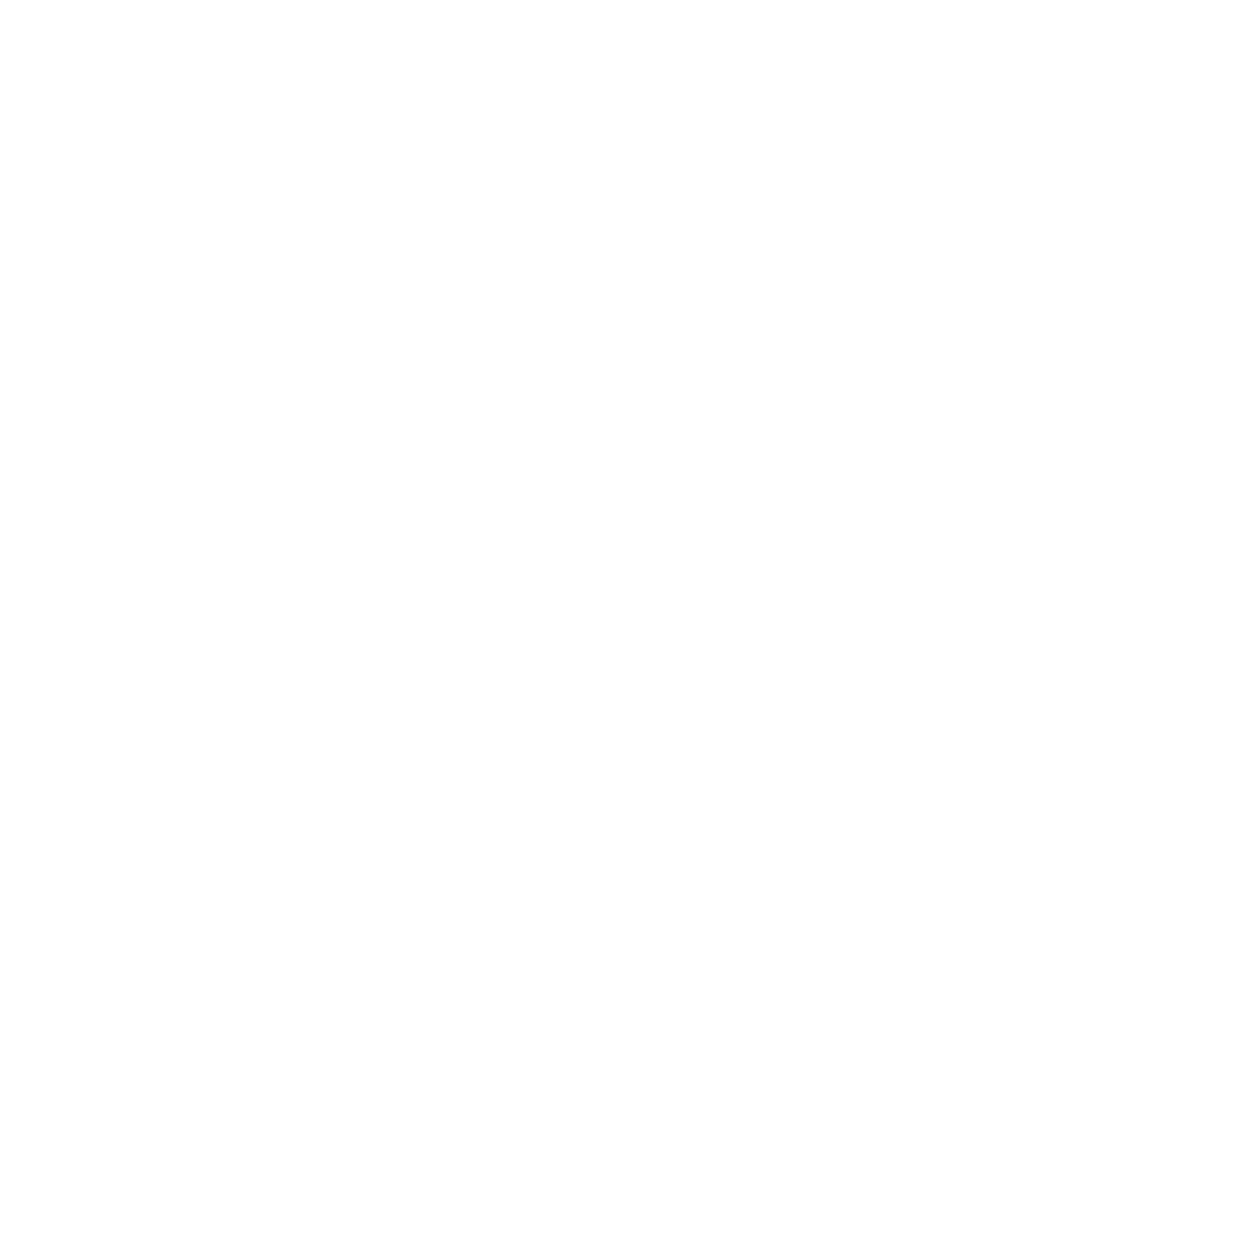 Sunken Studio